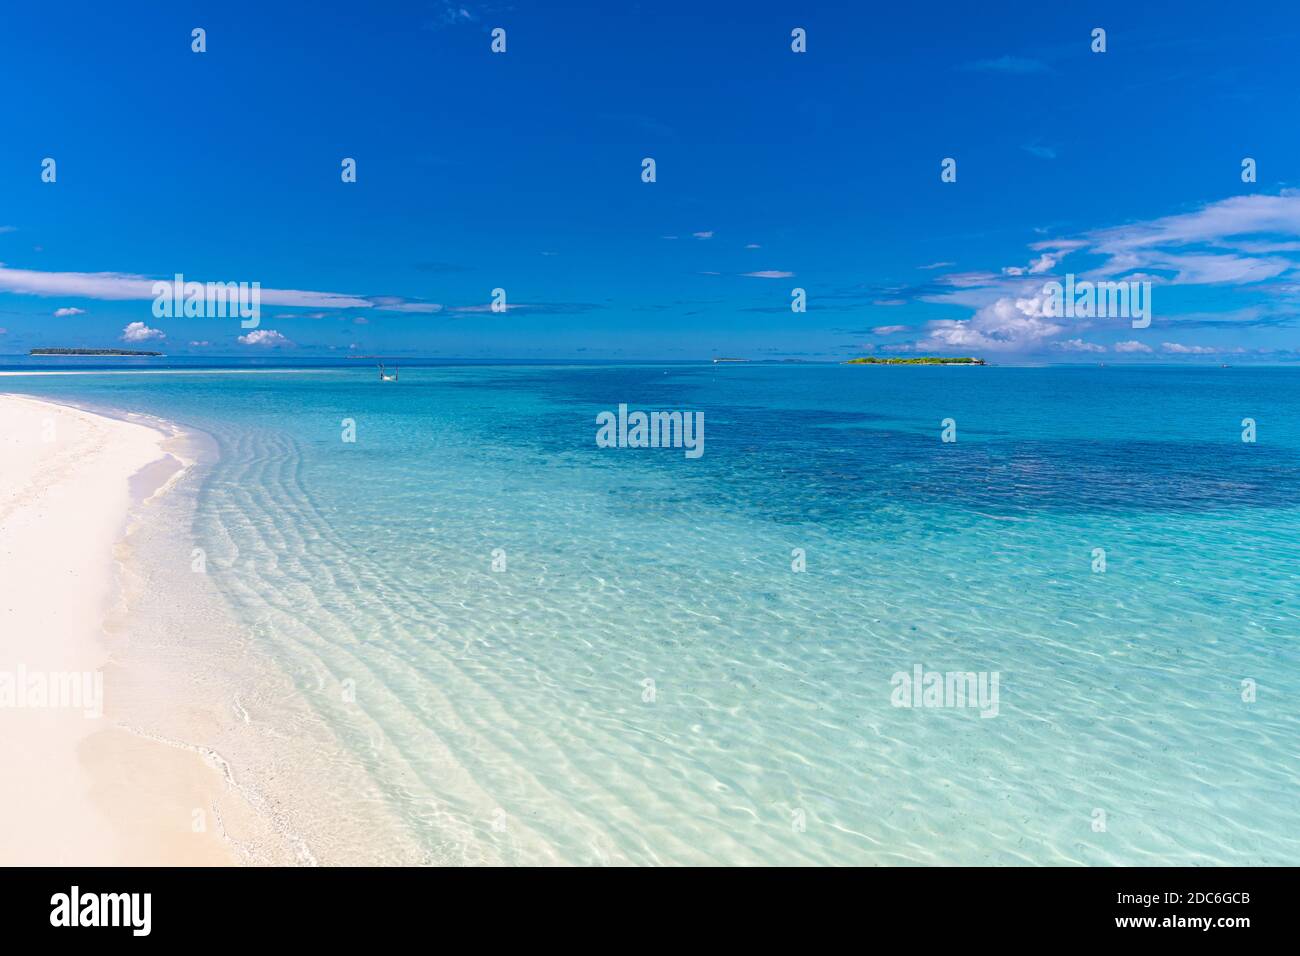 Tranquila escena de playa. Exótico paisaje de playa tropical. Diseño del concepto de vacaciones de verano, olas, horizonte marino sobre arena blanca con cielo azul. Foto de stock